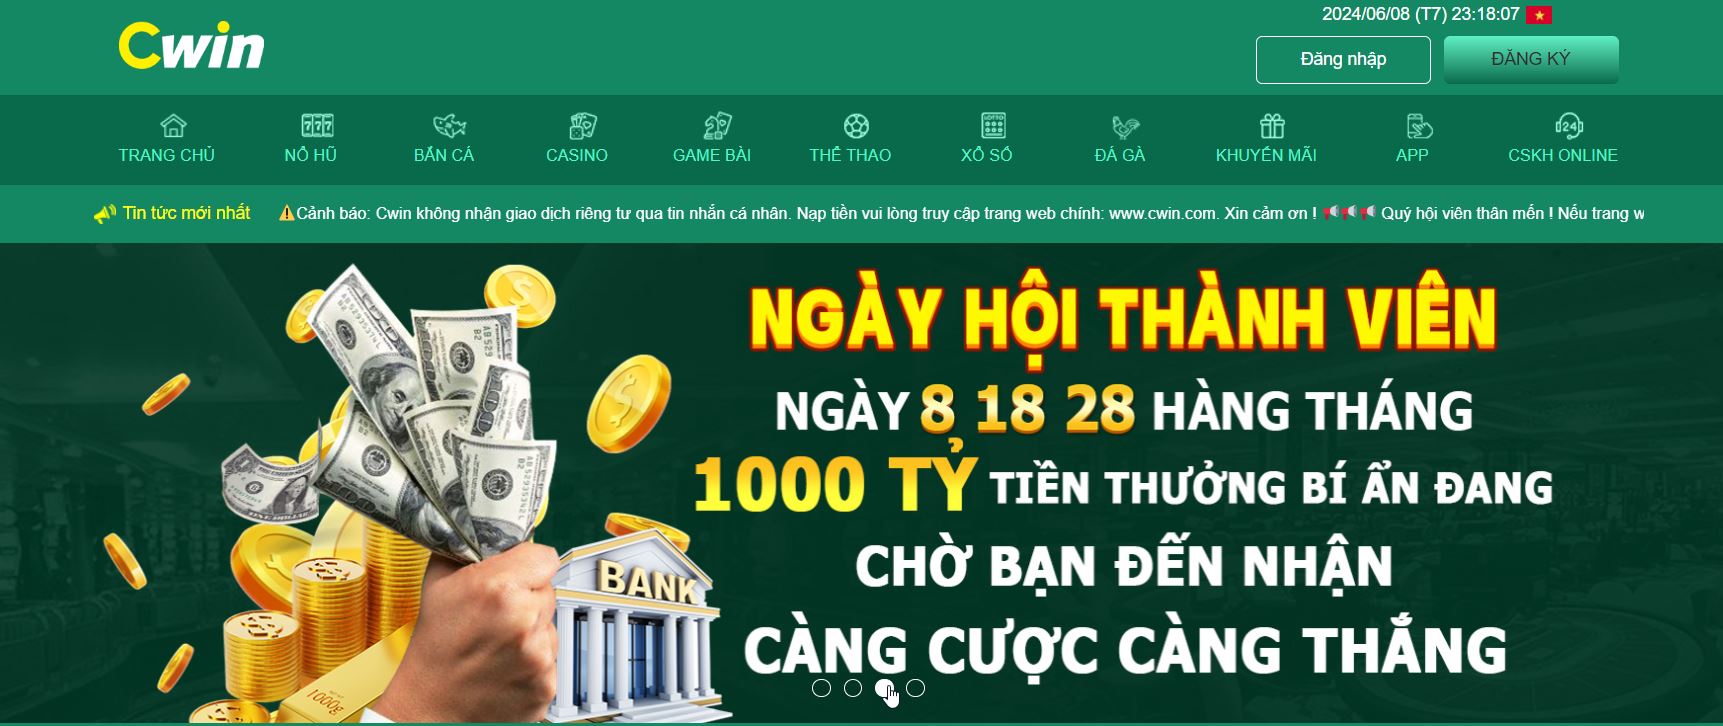 Cwin777 du nhập vào thị trường Việt Nam